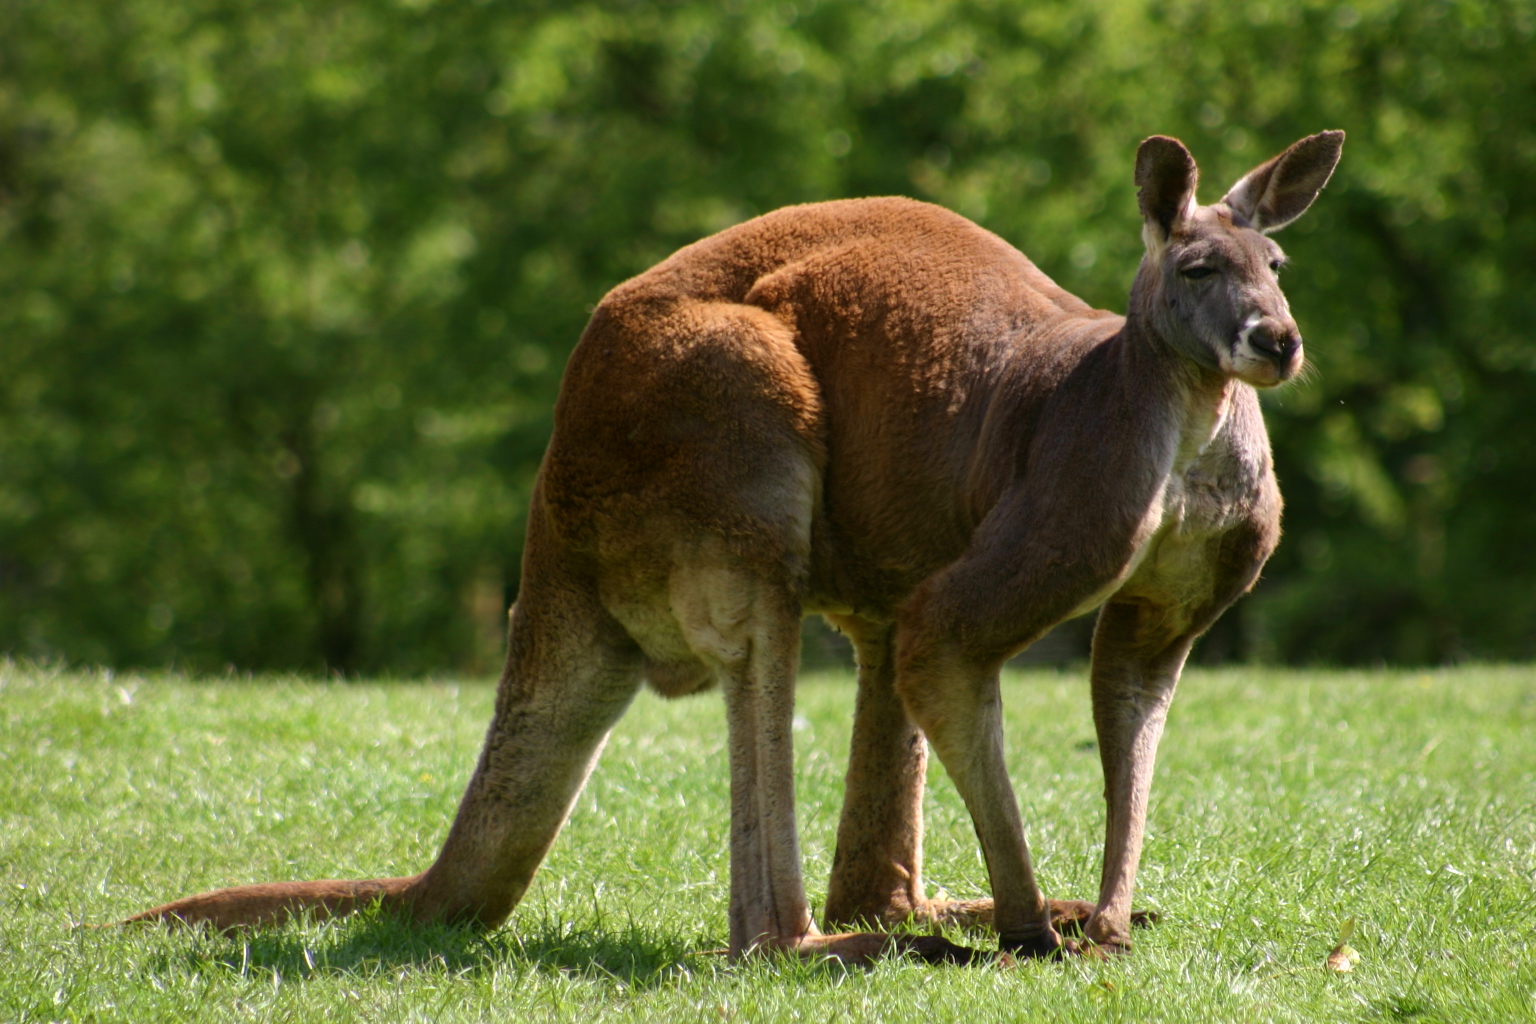 Animals of the world: Red Kangaroo